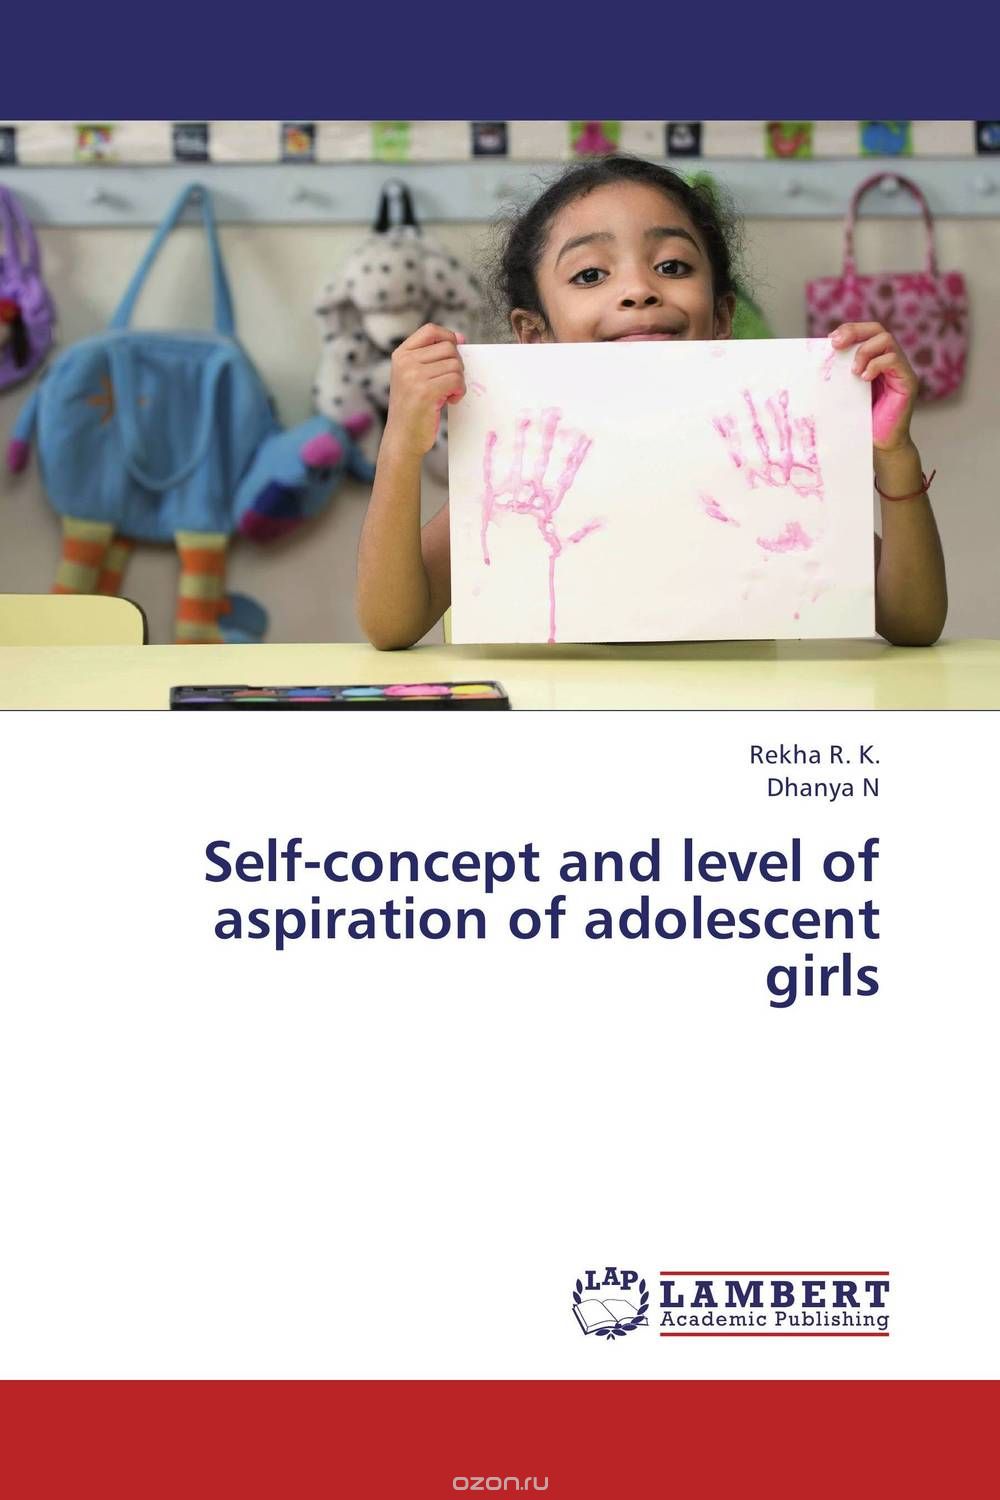 Скачать книгу "Self-concept and level of aspiration of adolescent girls"